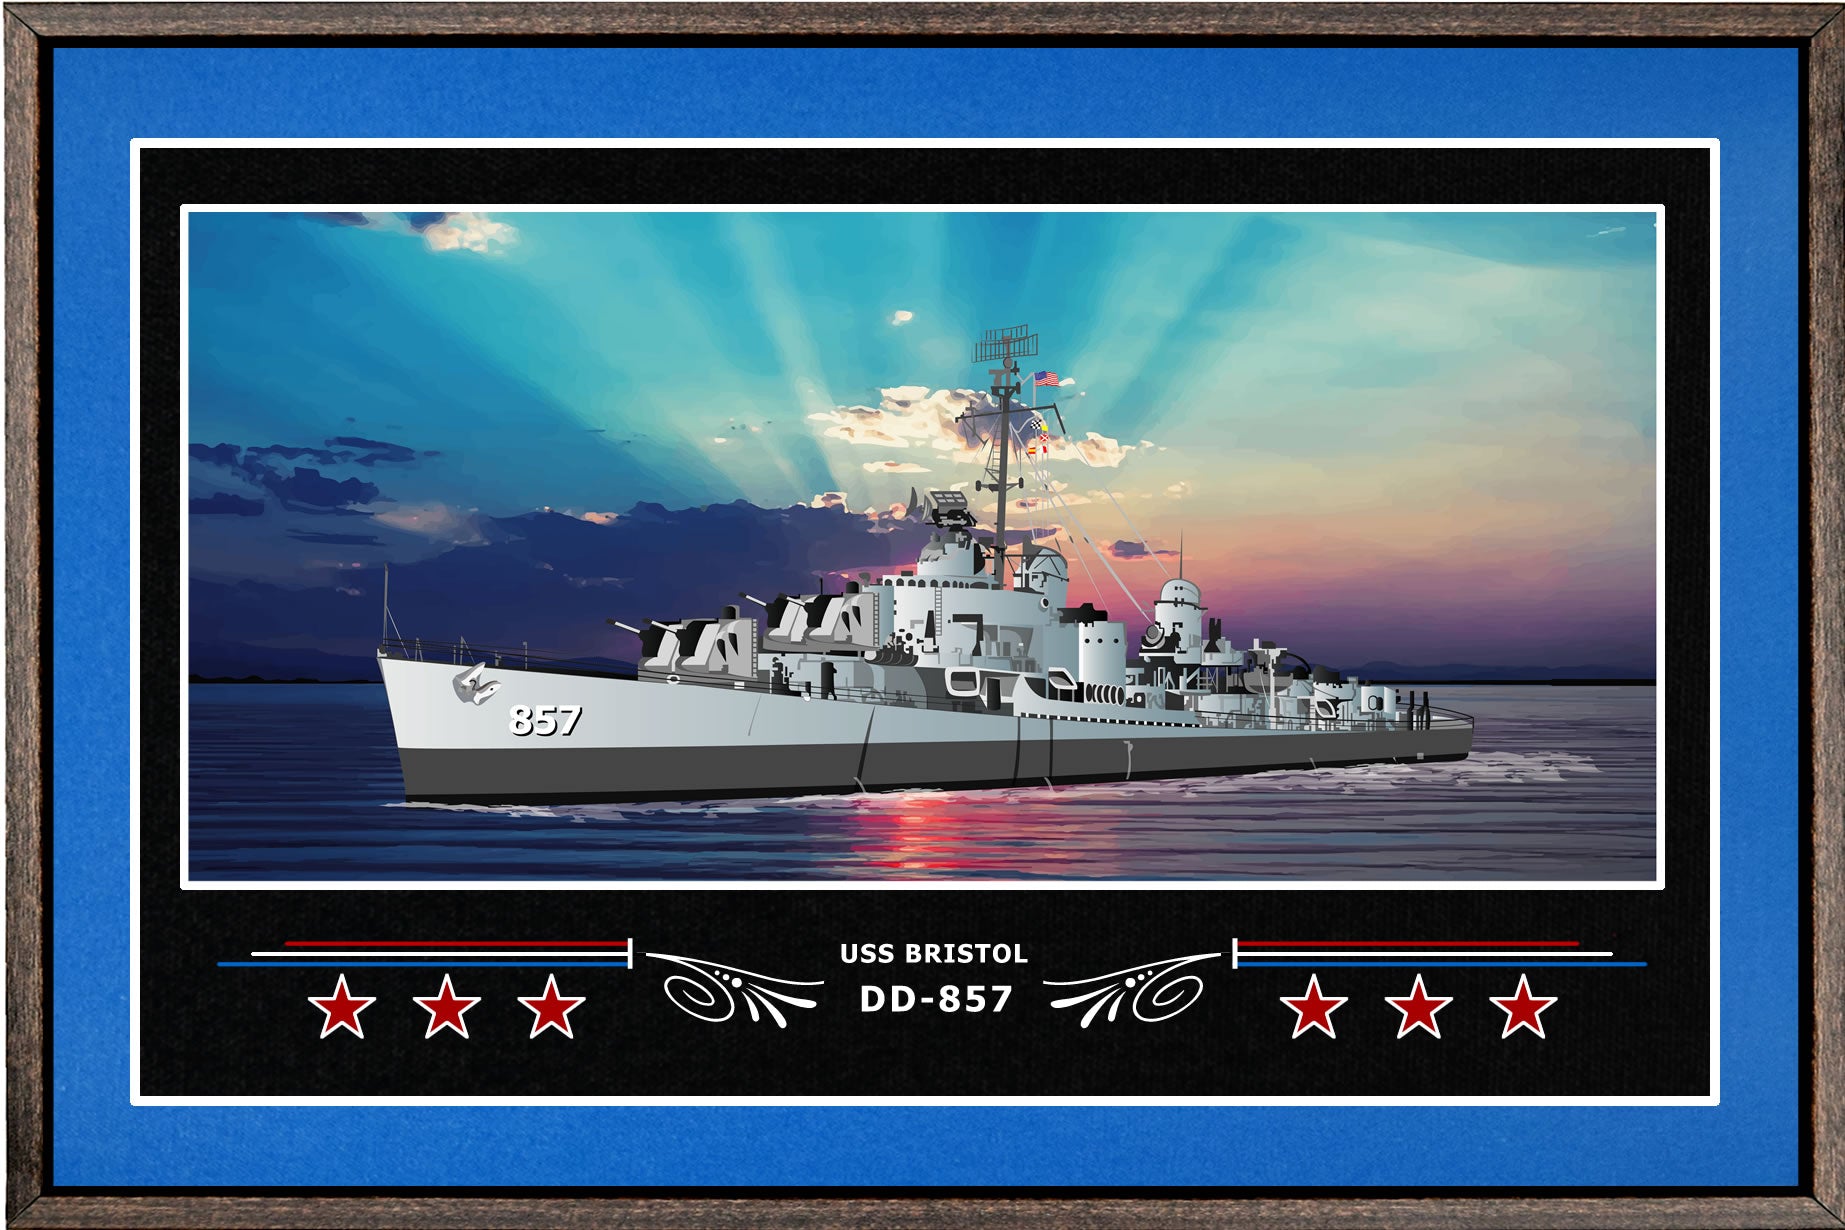 USS BRISTOL DD 857 BOX FRAMED CANVAS ART BLUE